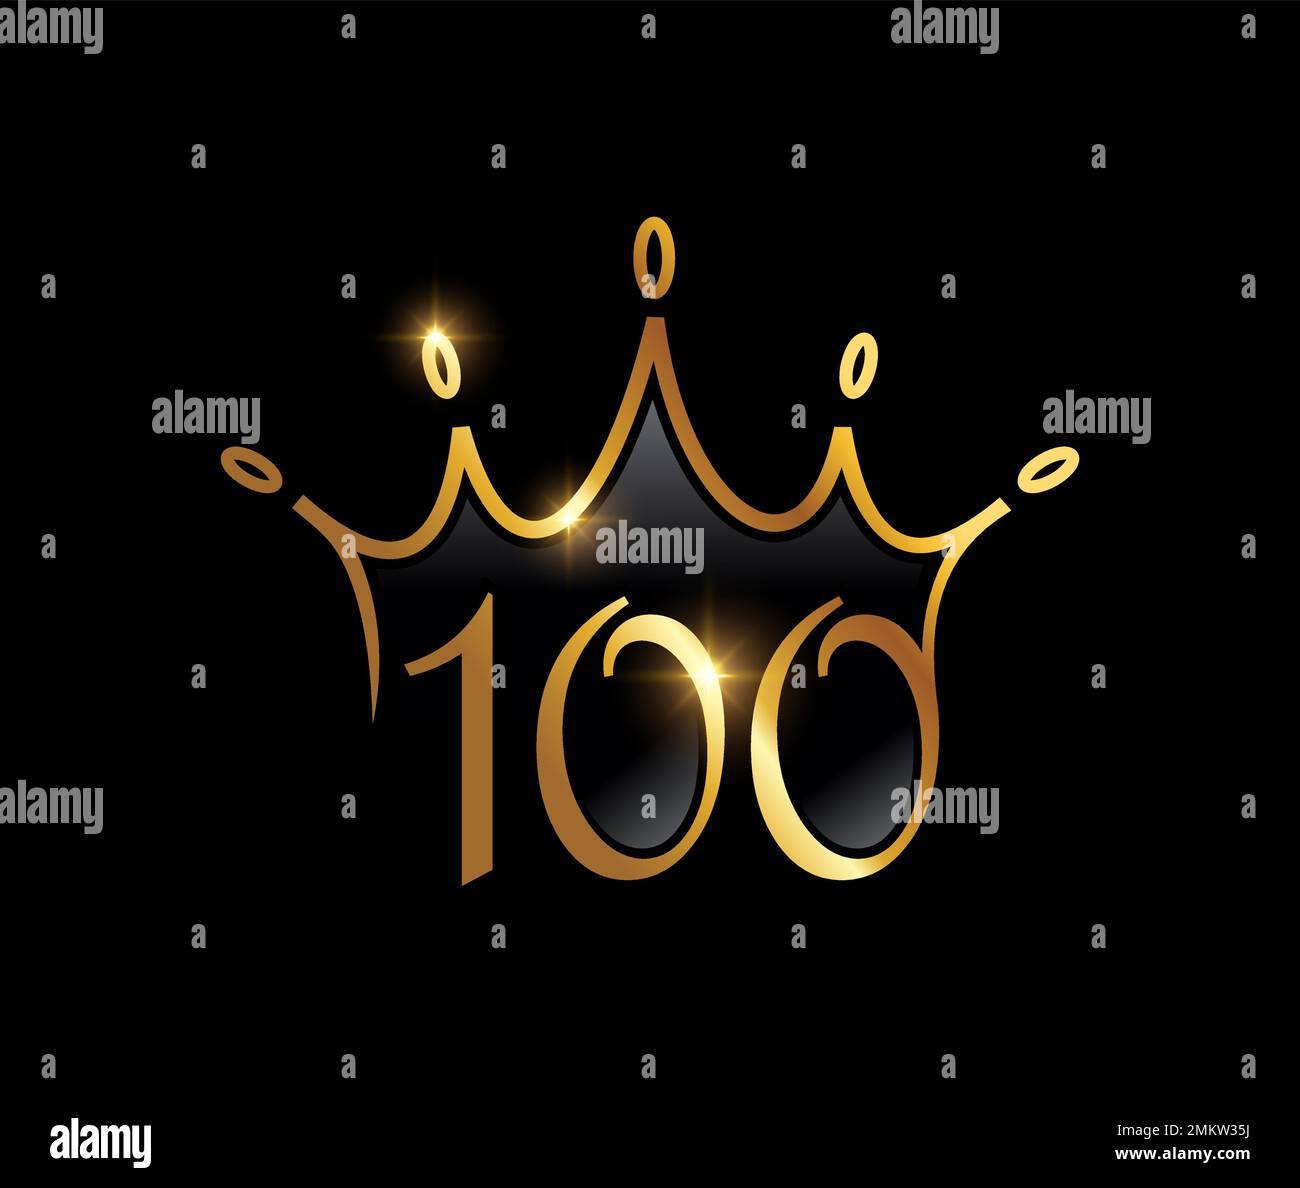 A vector illustration set of Golden Luxury Crown Monogram Number 100 ...